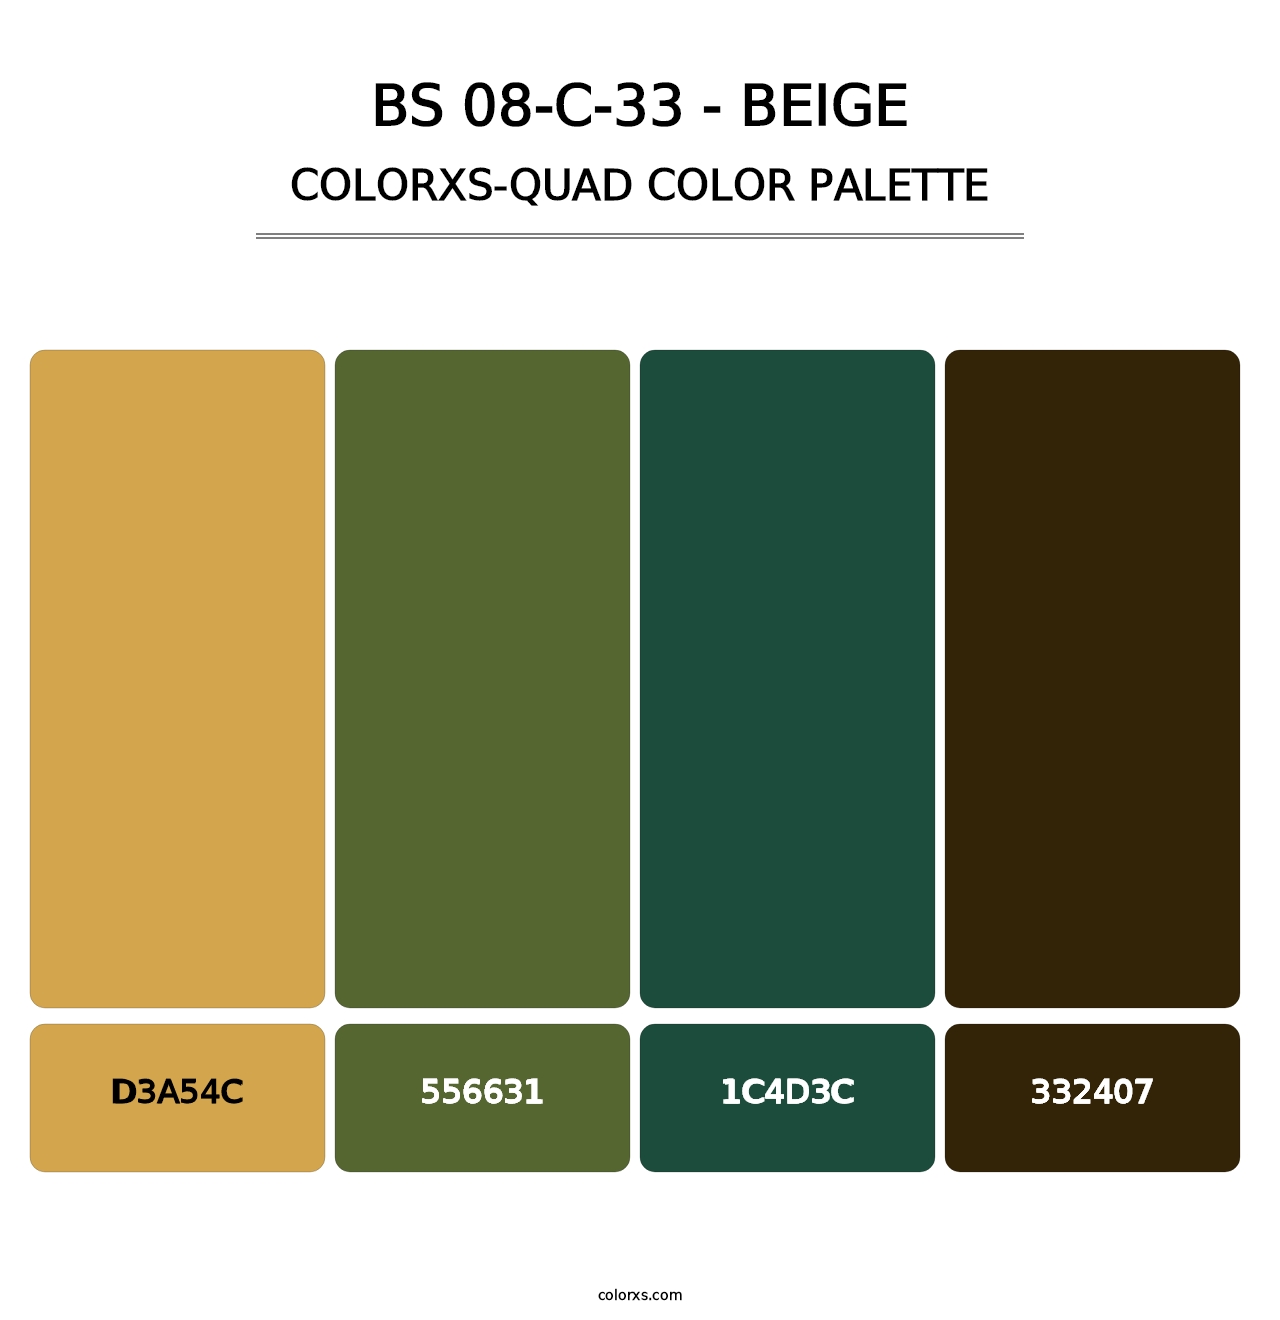 BS 08-C-33 - Beige - Colorxs Quad Palette